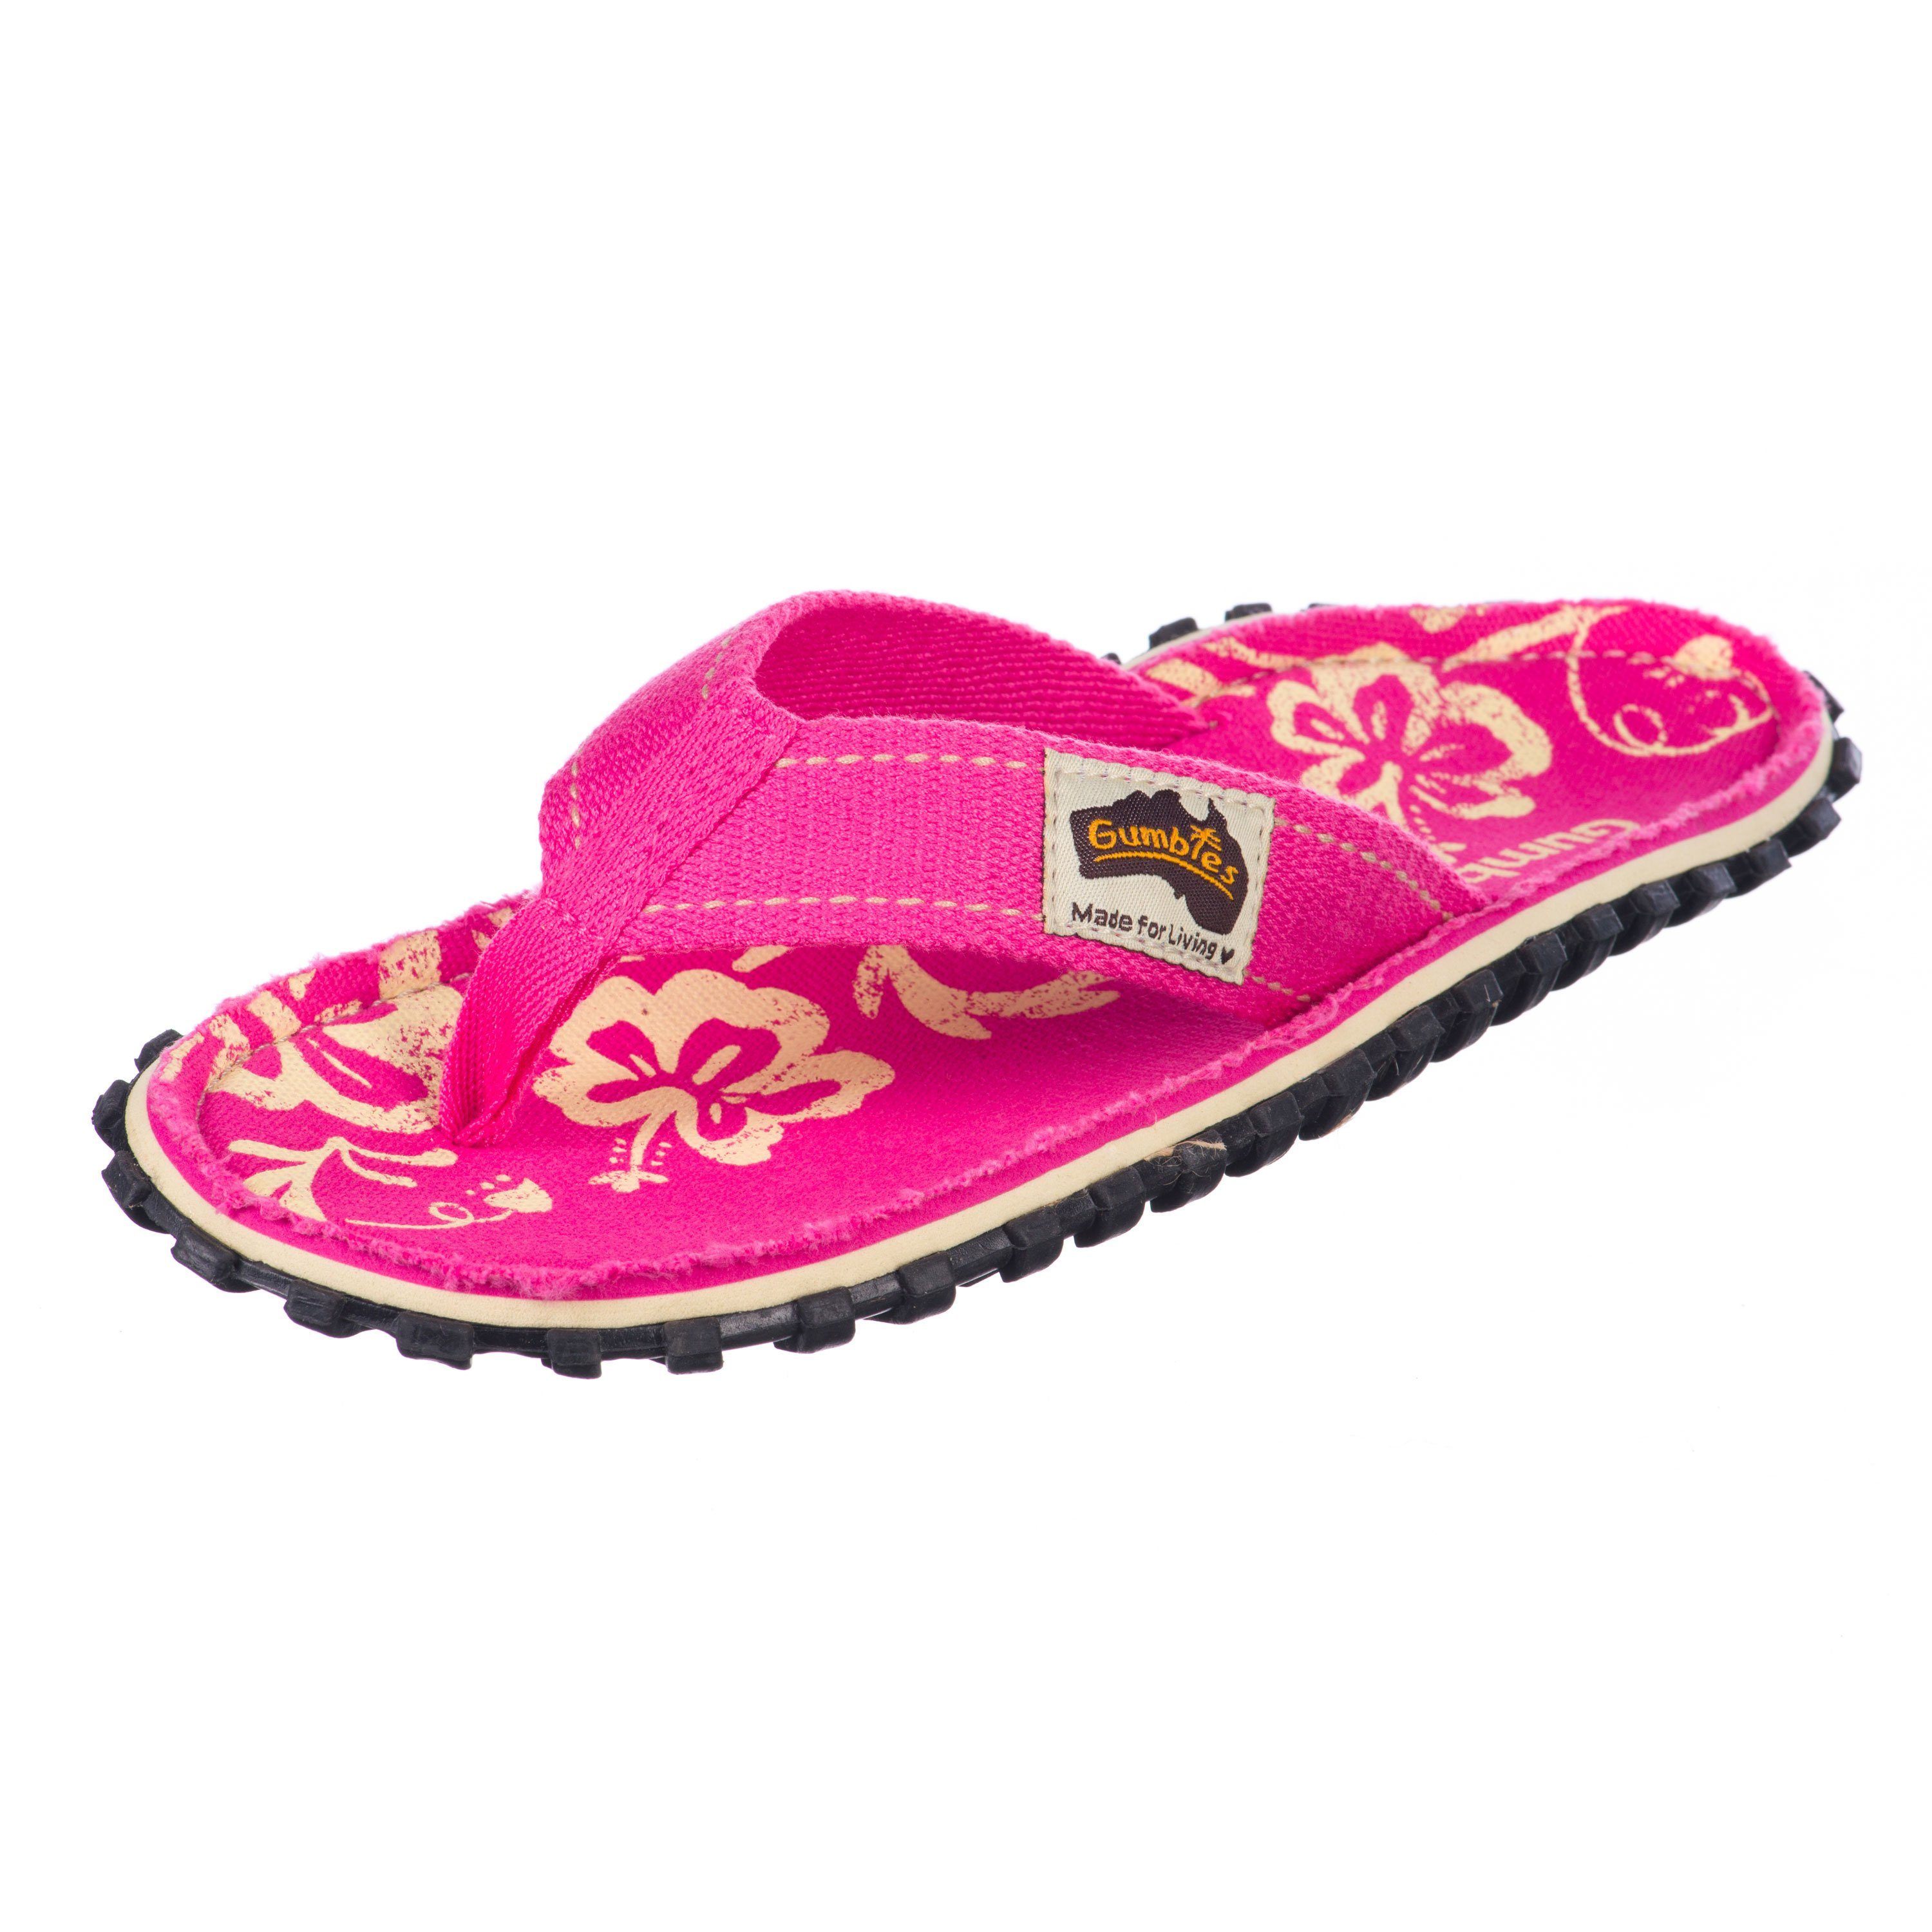 Schuhe  Gumbies Original Kids in Pink Hibiscus T-Strap-Zehentrenner aus recycelten Materialien in farbenfrohen Designs